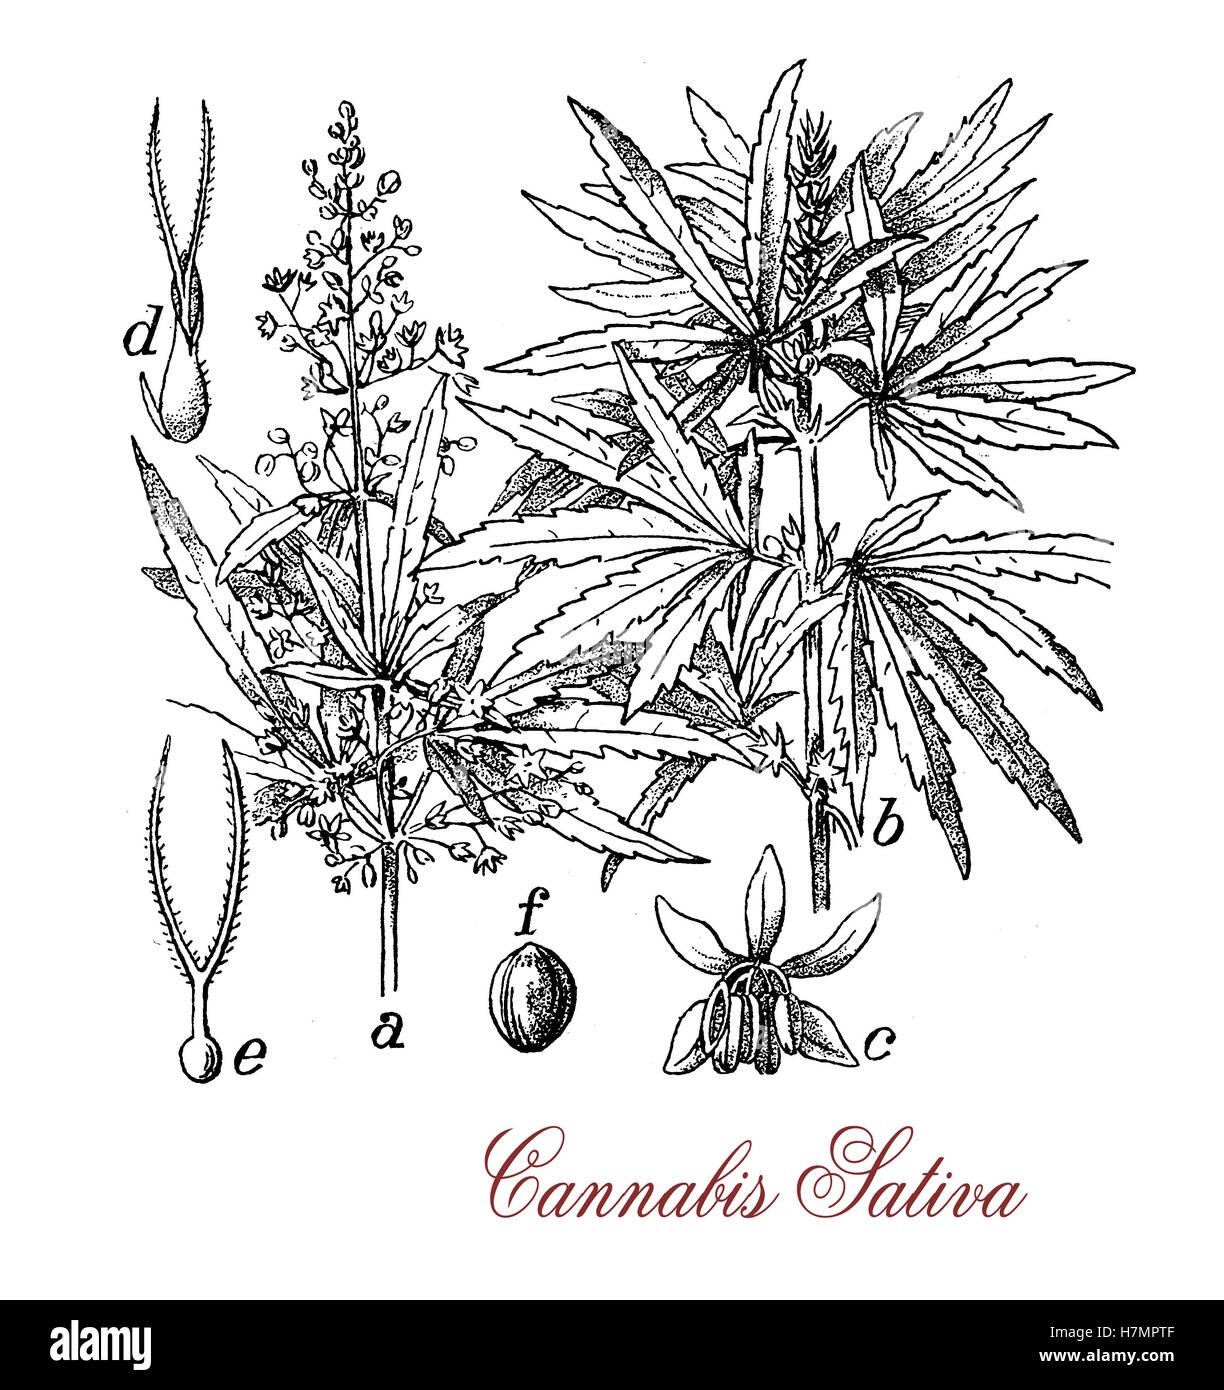 Vintage Print von Cannabis Sativa krautige Pflanze botanischen Morphologie: jeder Teil der Pflanze wird anders geerntet, die Samen für Hanföl oder Vogel füttern, Blumen für Cannabinoide Freizeit- und medizinischen Zwecken verbraucht Stockfoto